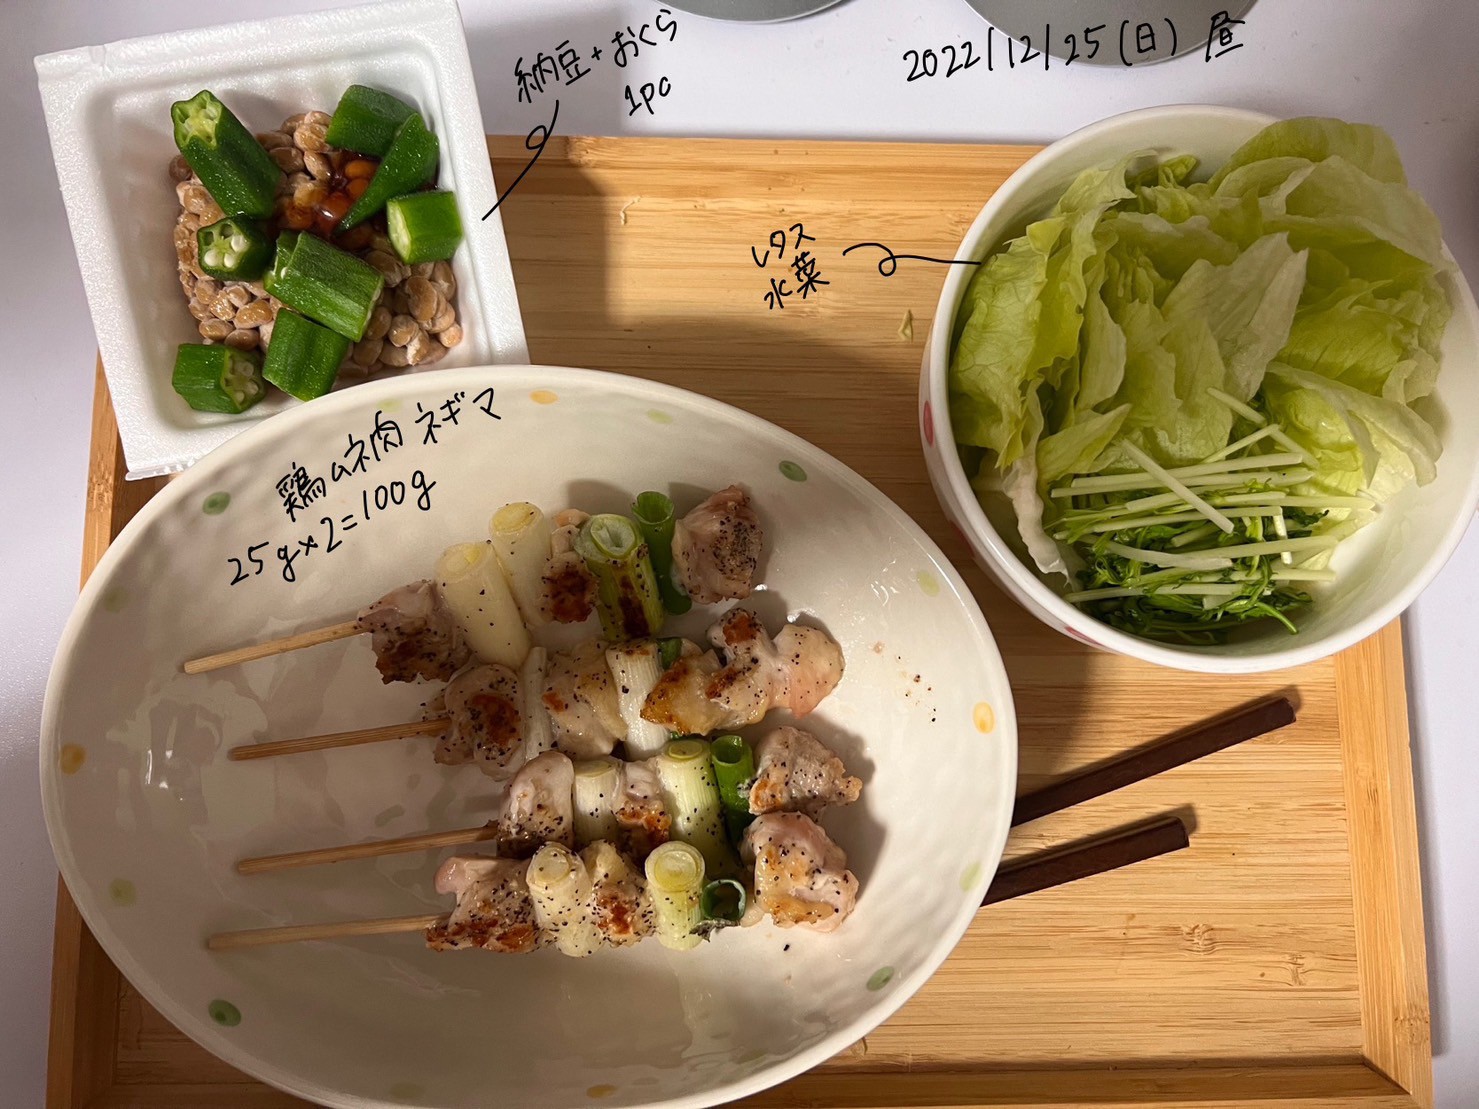 ダイエット・ボディメイクお昼ご飯食事例（ねぎまやきとり、おくら納豆 レタス、水菜）